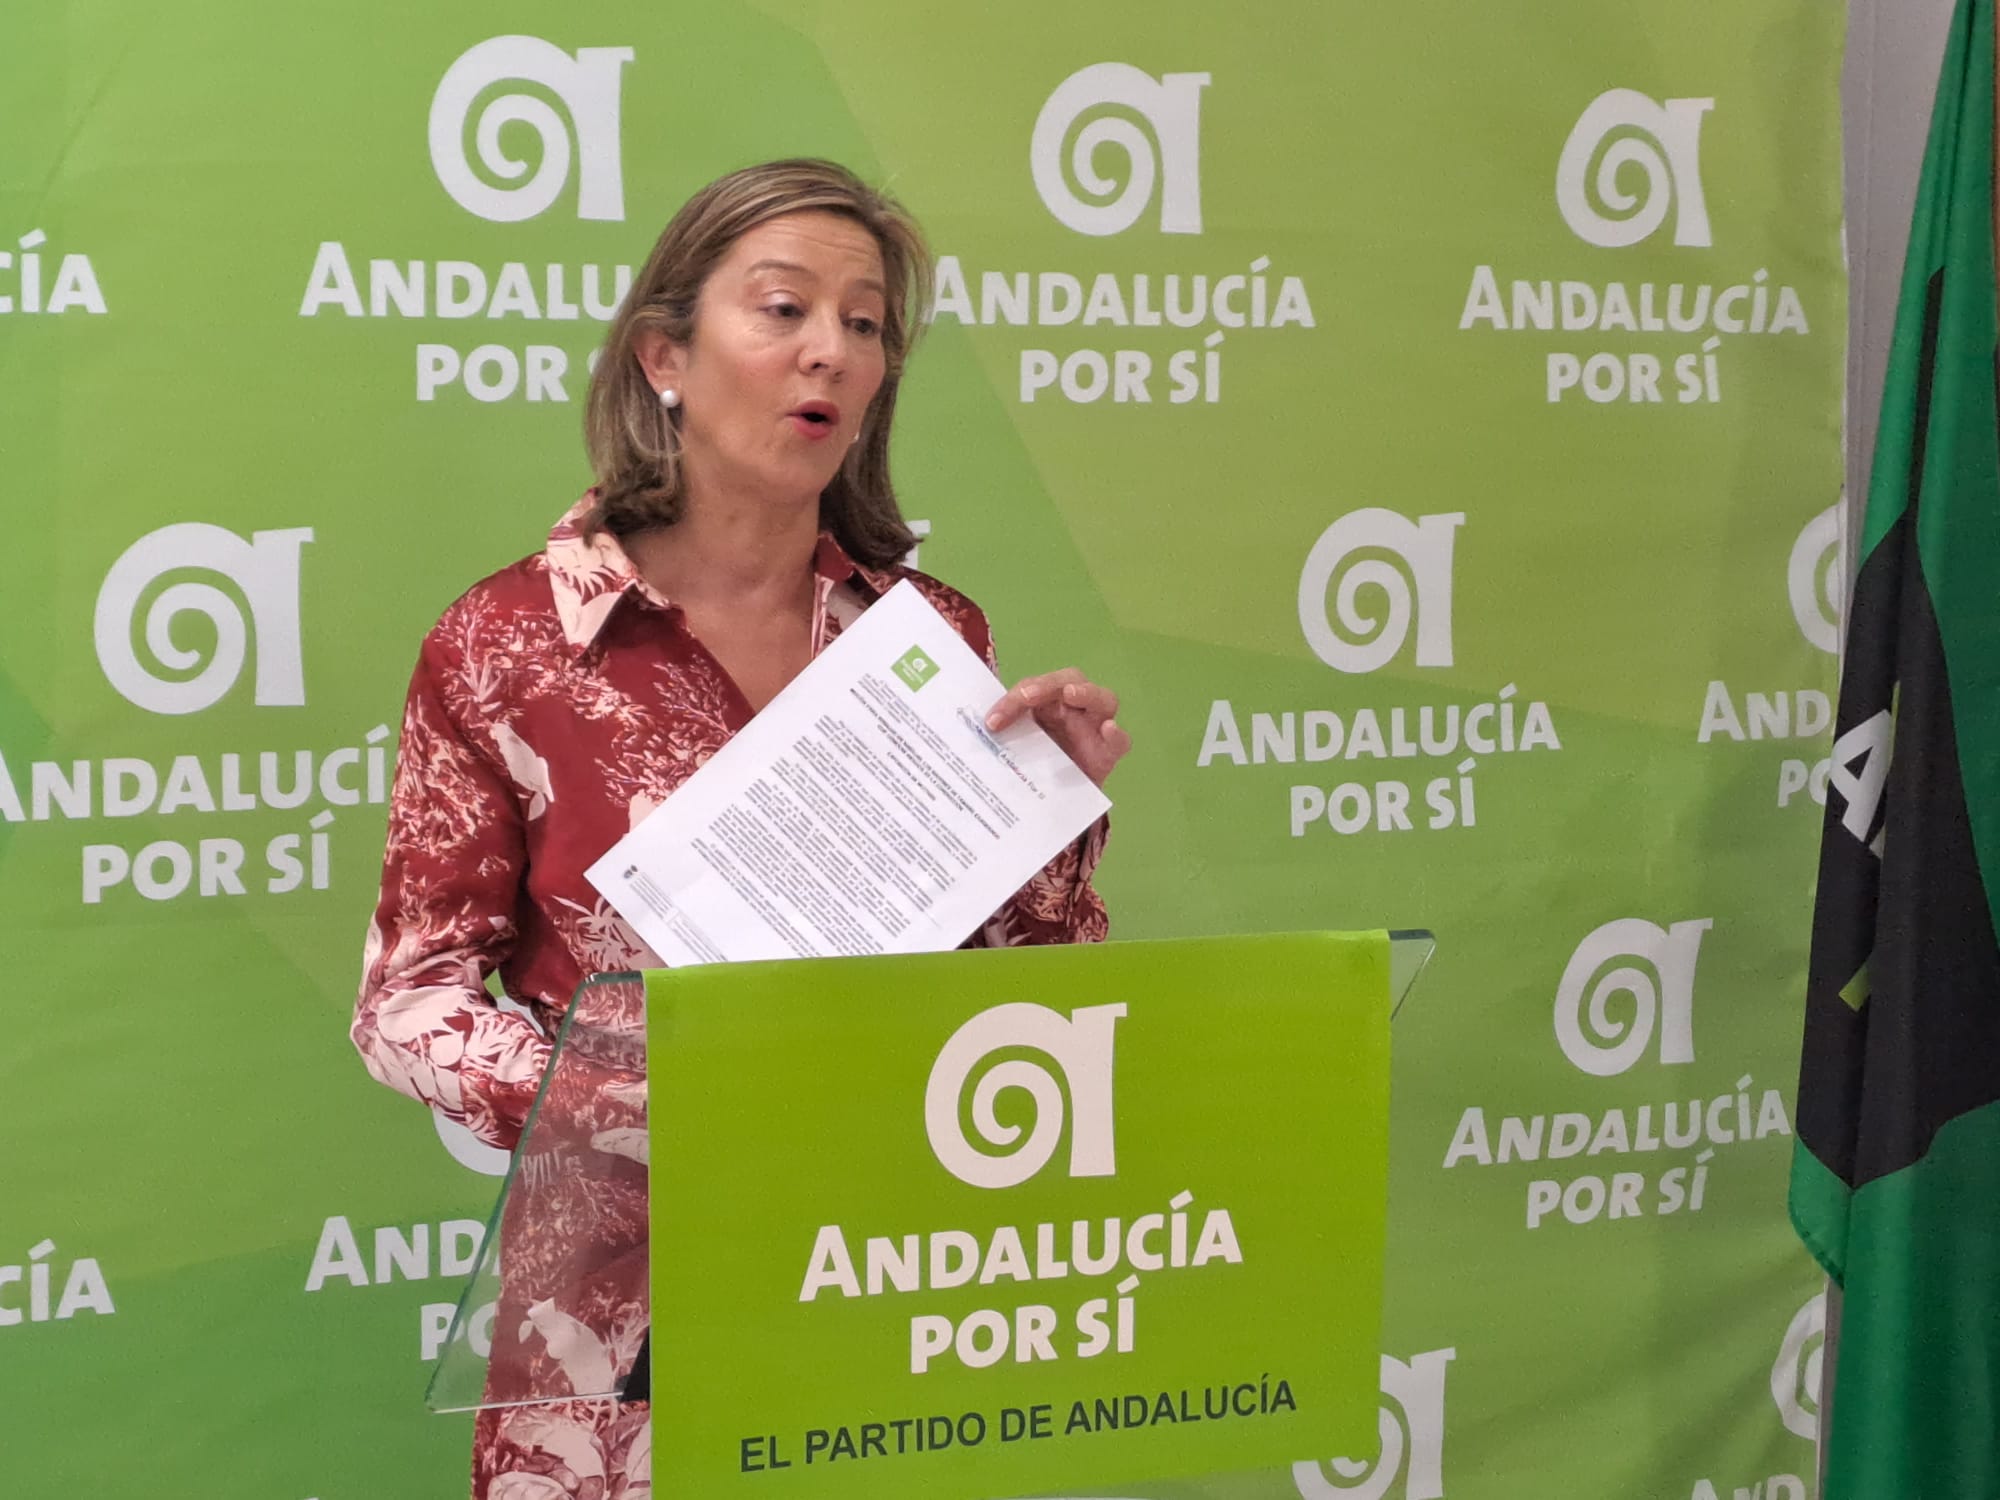 AxSÍ Andújar exige al Gobierno Local rebajar los badenes de tamaño exagerado al considerar que generan riesgos en la conducción